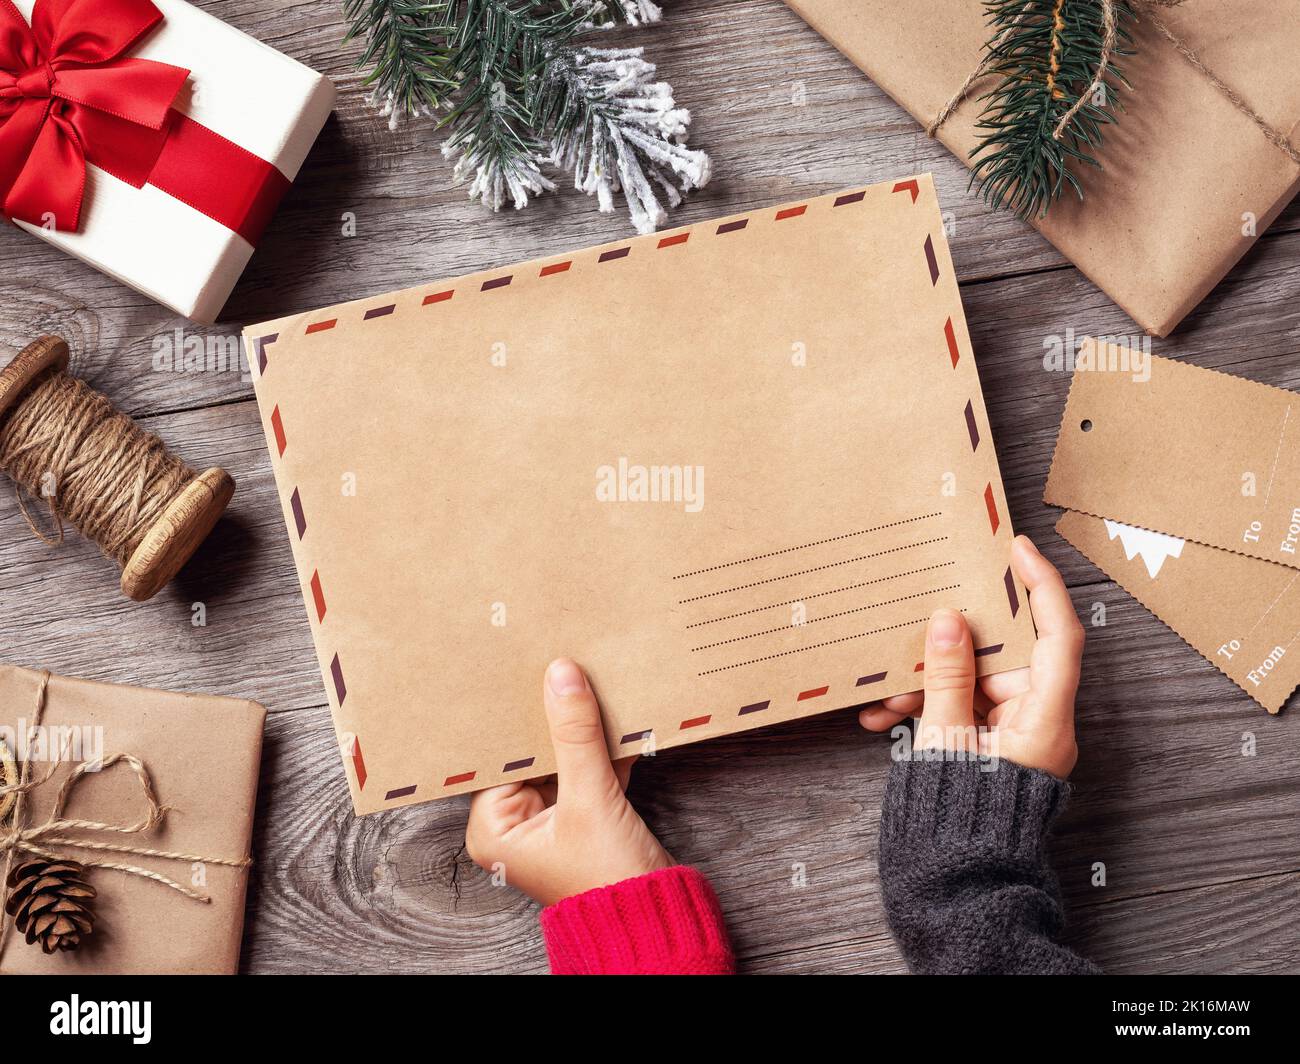 L'enfant tient dans ses mains une enveloppe avec une lettre au Père Noël sur le fond des décorations de Noël, un modèle pour le designer Banque D'Images